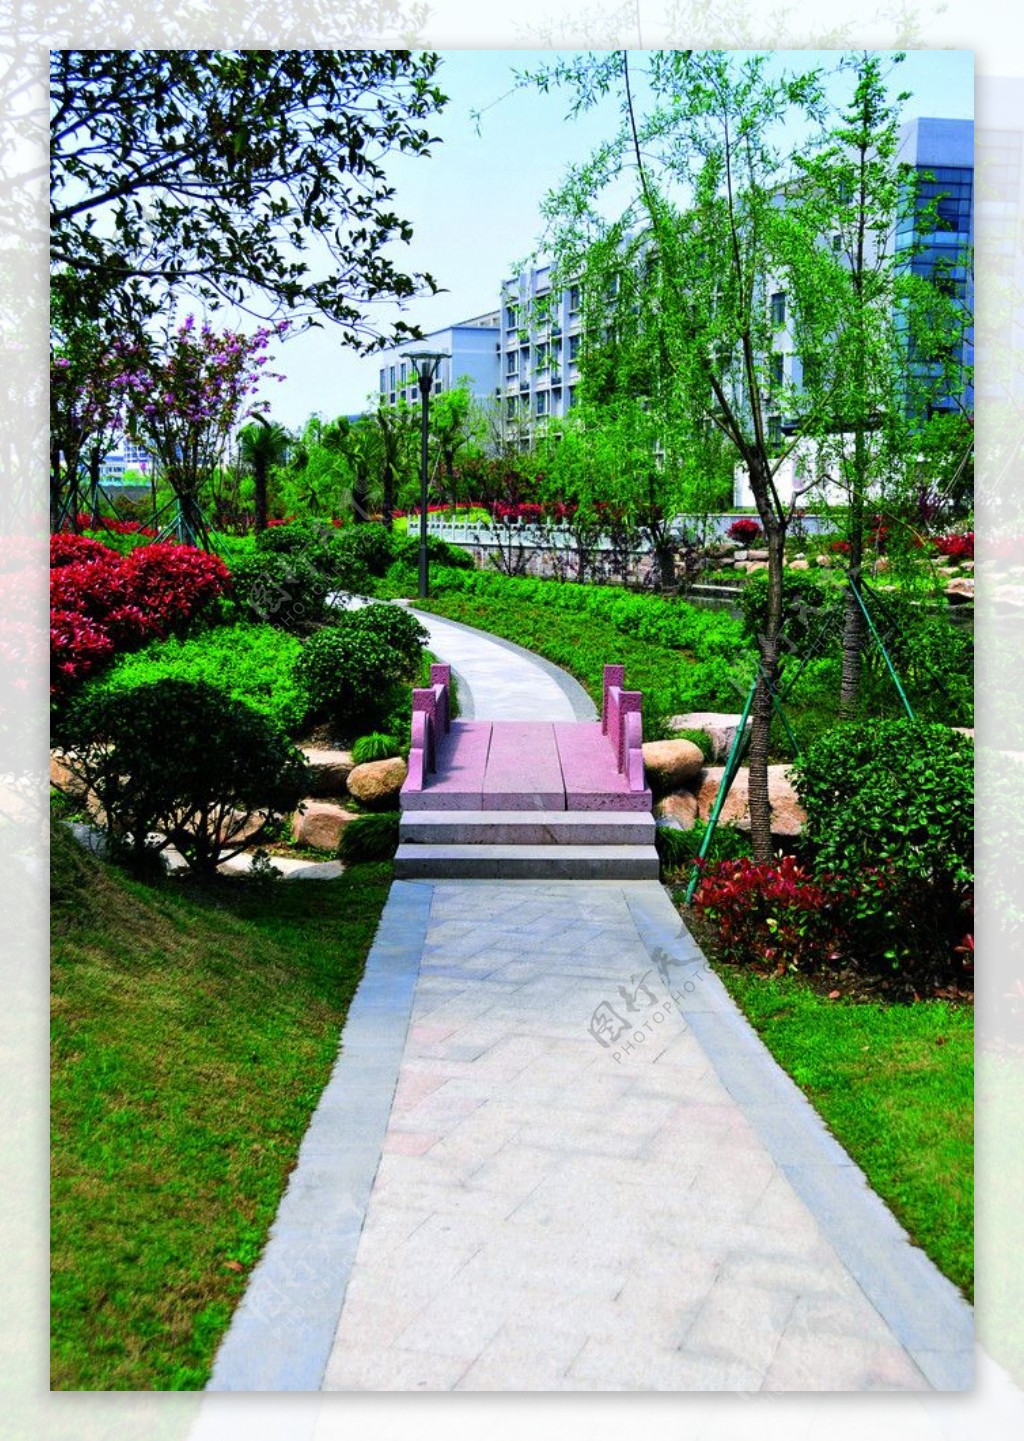 2009公园绿化金奖拱墅区后横港公园图片